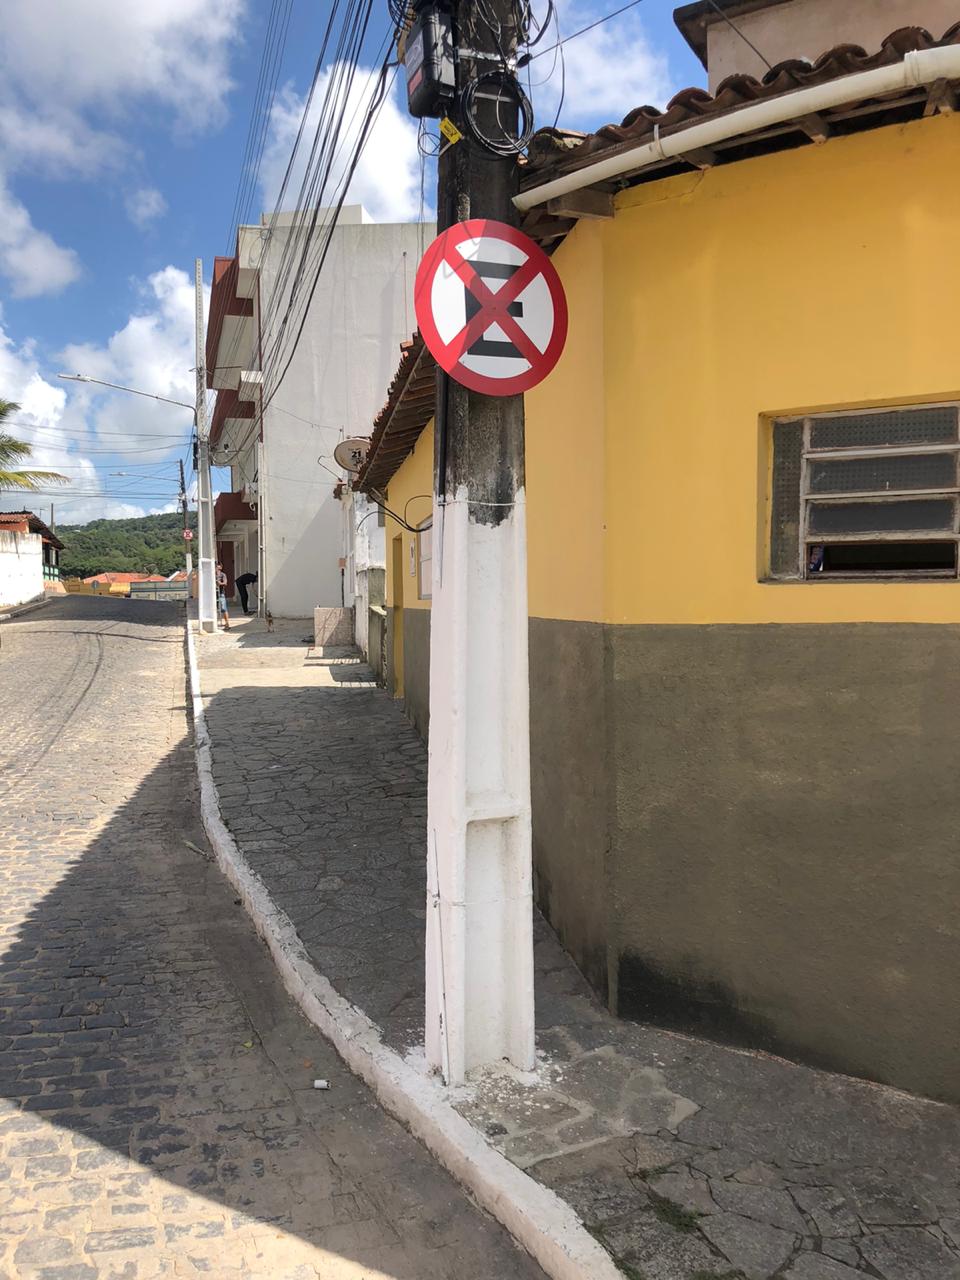 Departamento Municipal de Trânsito de Bananeiras realiza instalação de novas placas de sinalização